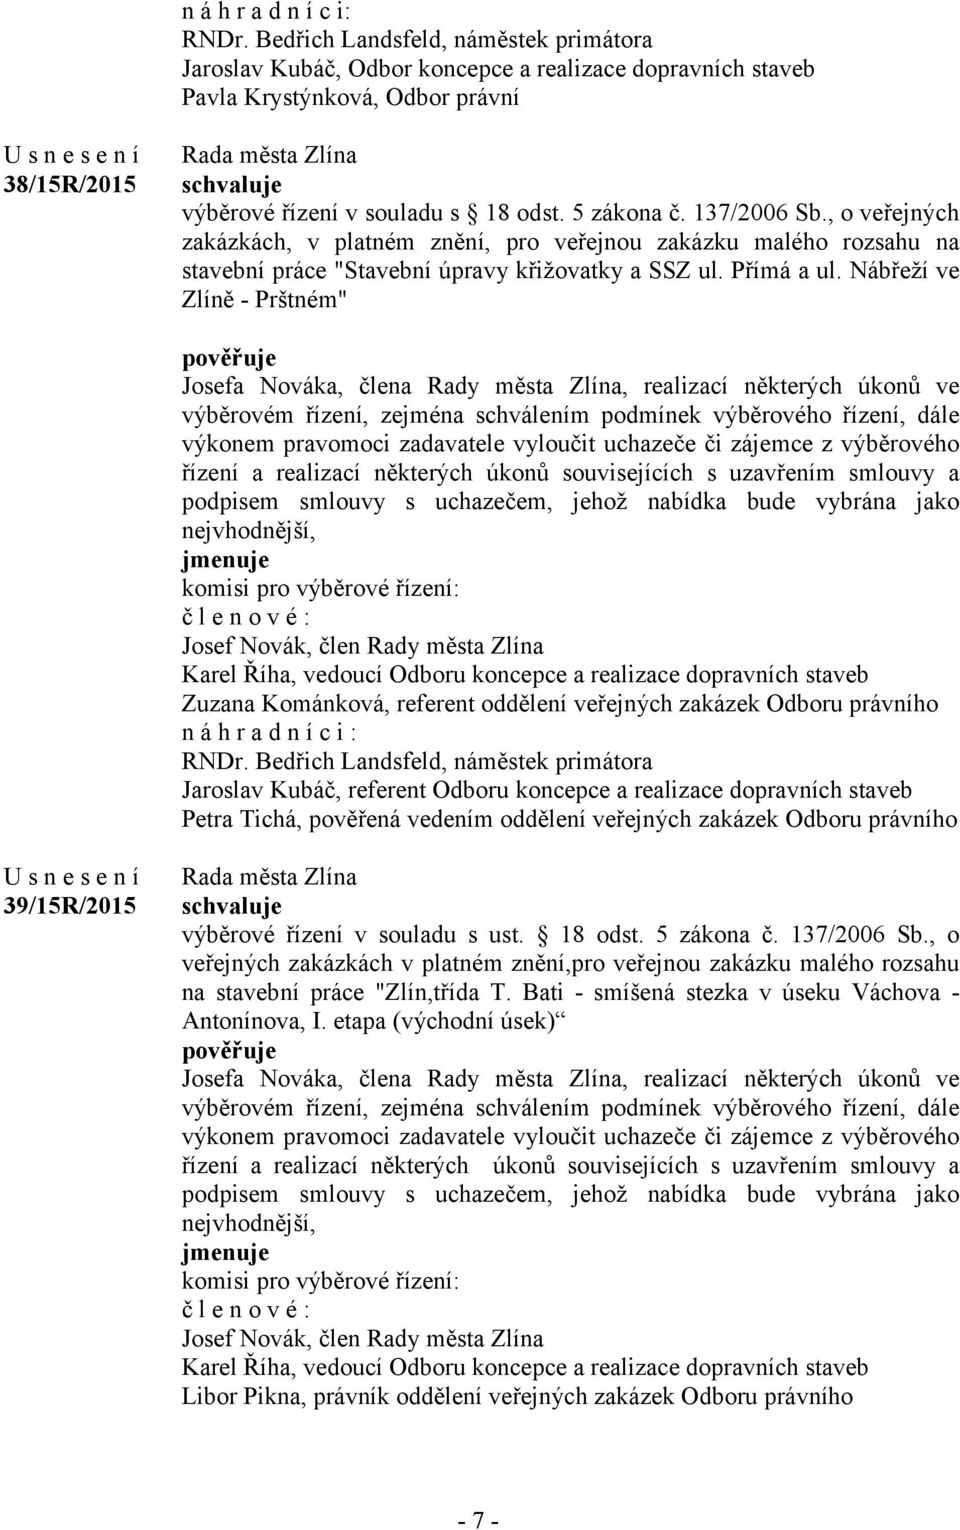 137/2006 Sb., o veřejných zakázkách, v platném znění, pro veřejnou zakázku malého rozsahu na stavební práce "Stavební úpravy křižovatky a SSZ ul. Přímá a ul.